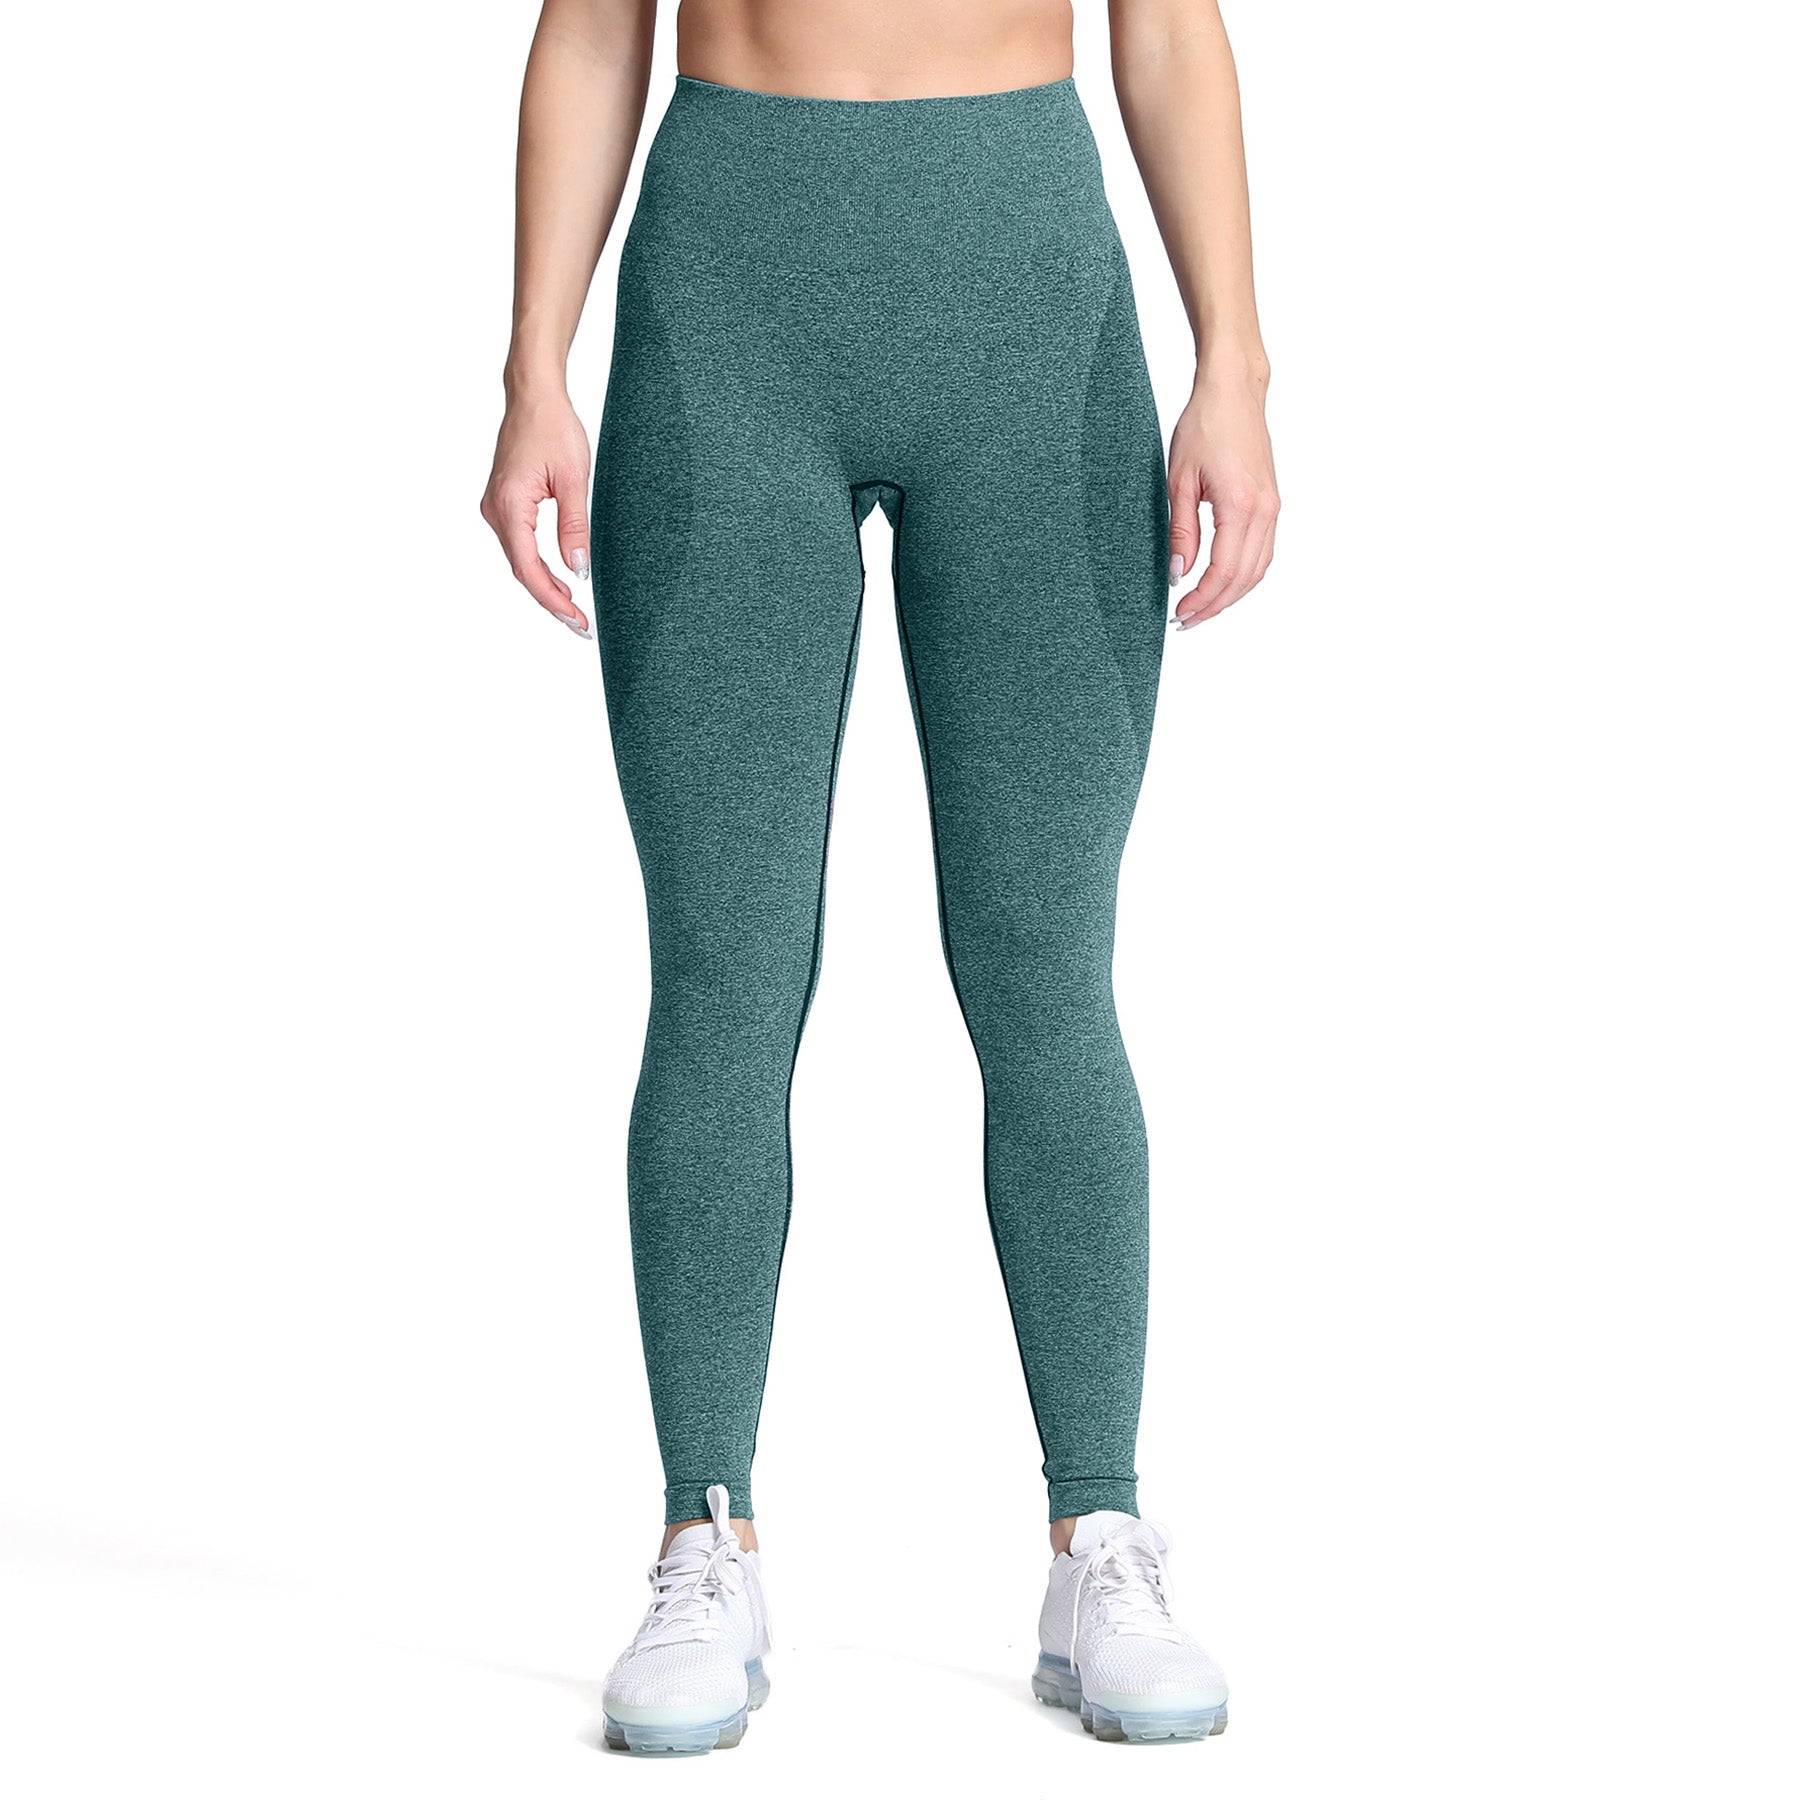 Gymshark Vital Seamless Leggings - Dark Green Marl Size S BRAND NEW